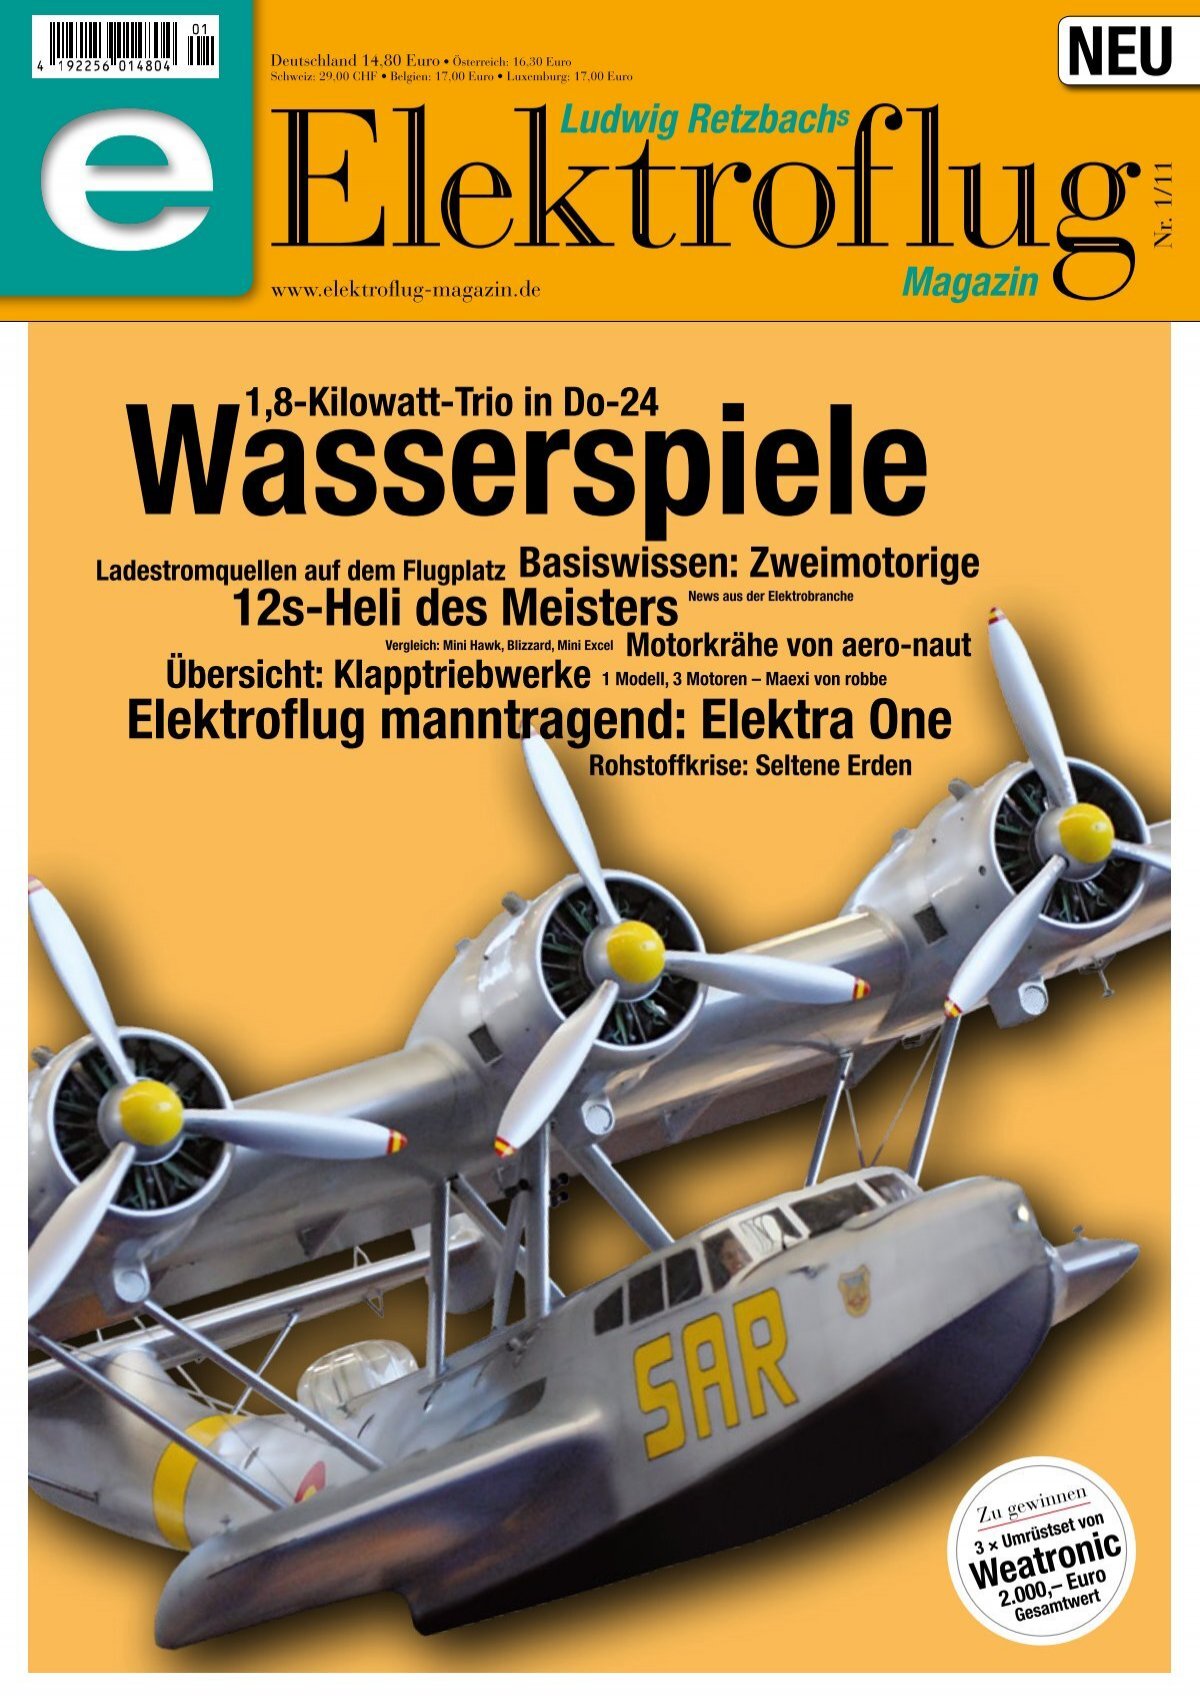 Ludwig Retzbachs Elektroflug Magazin Wasserspiele (Vorschau)